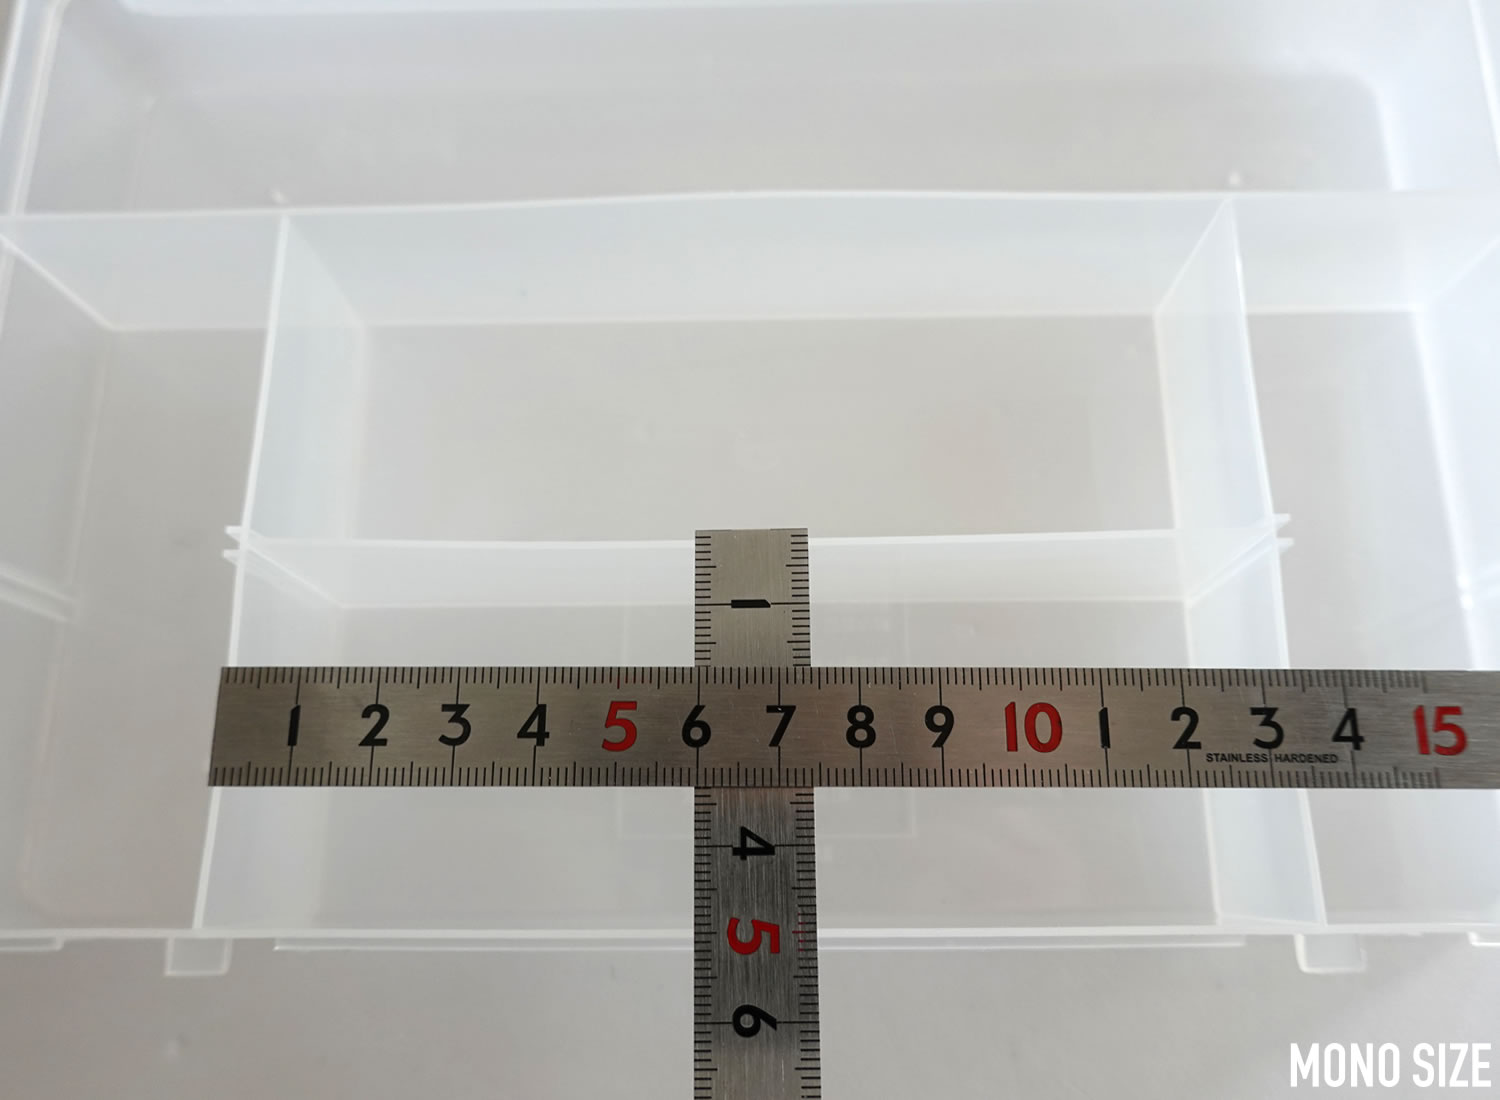 100均「セパレートボックス Lサイズ 仕切り板2枚付属」の商品情報とサイズ・収納例。セリアで販売（4906137314712）